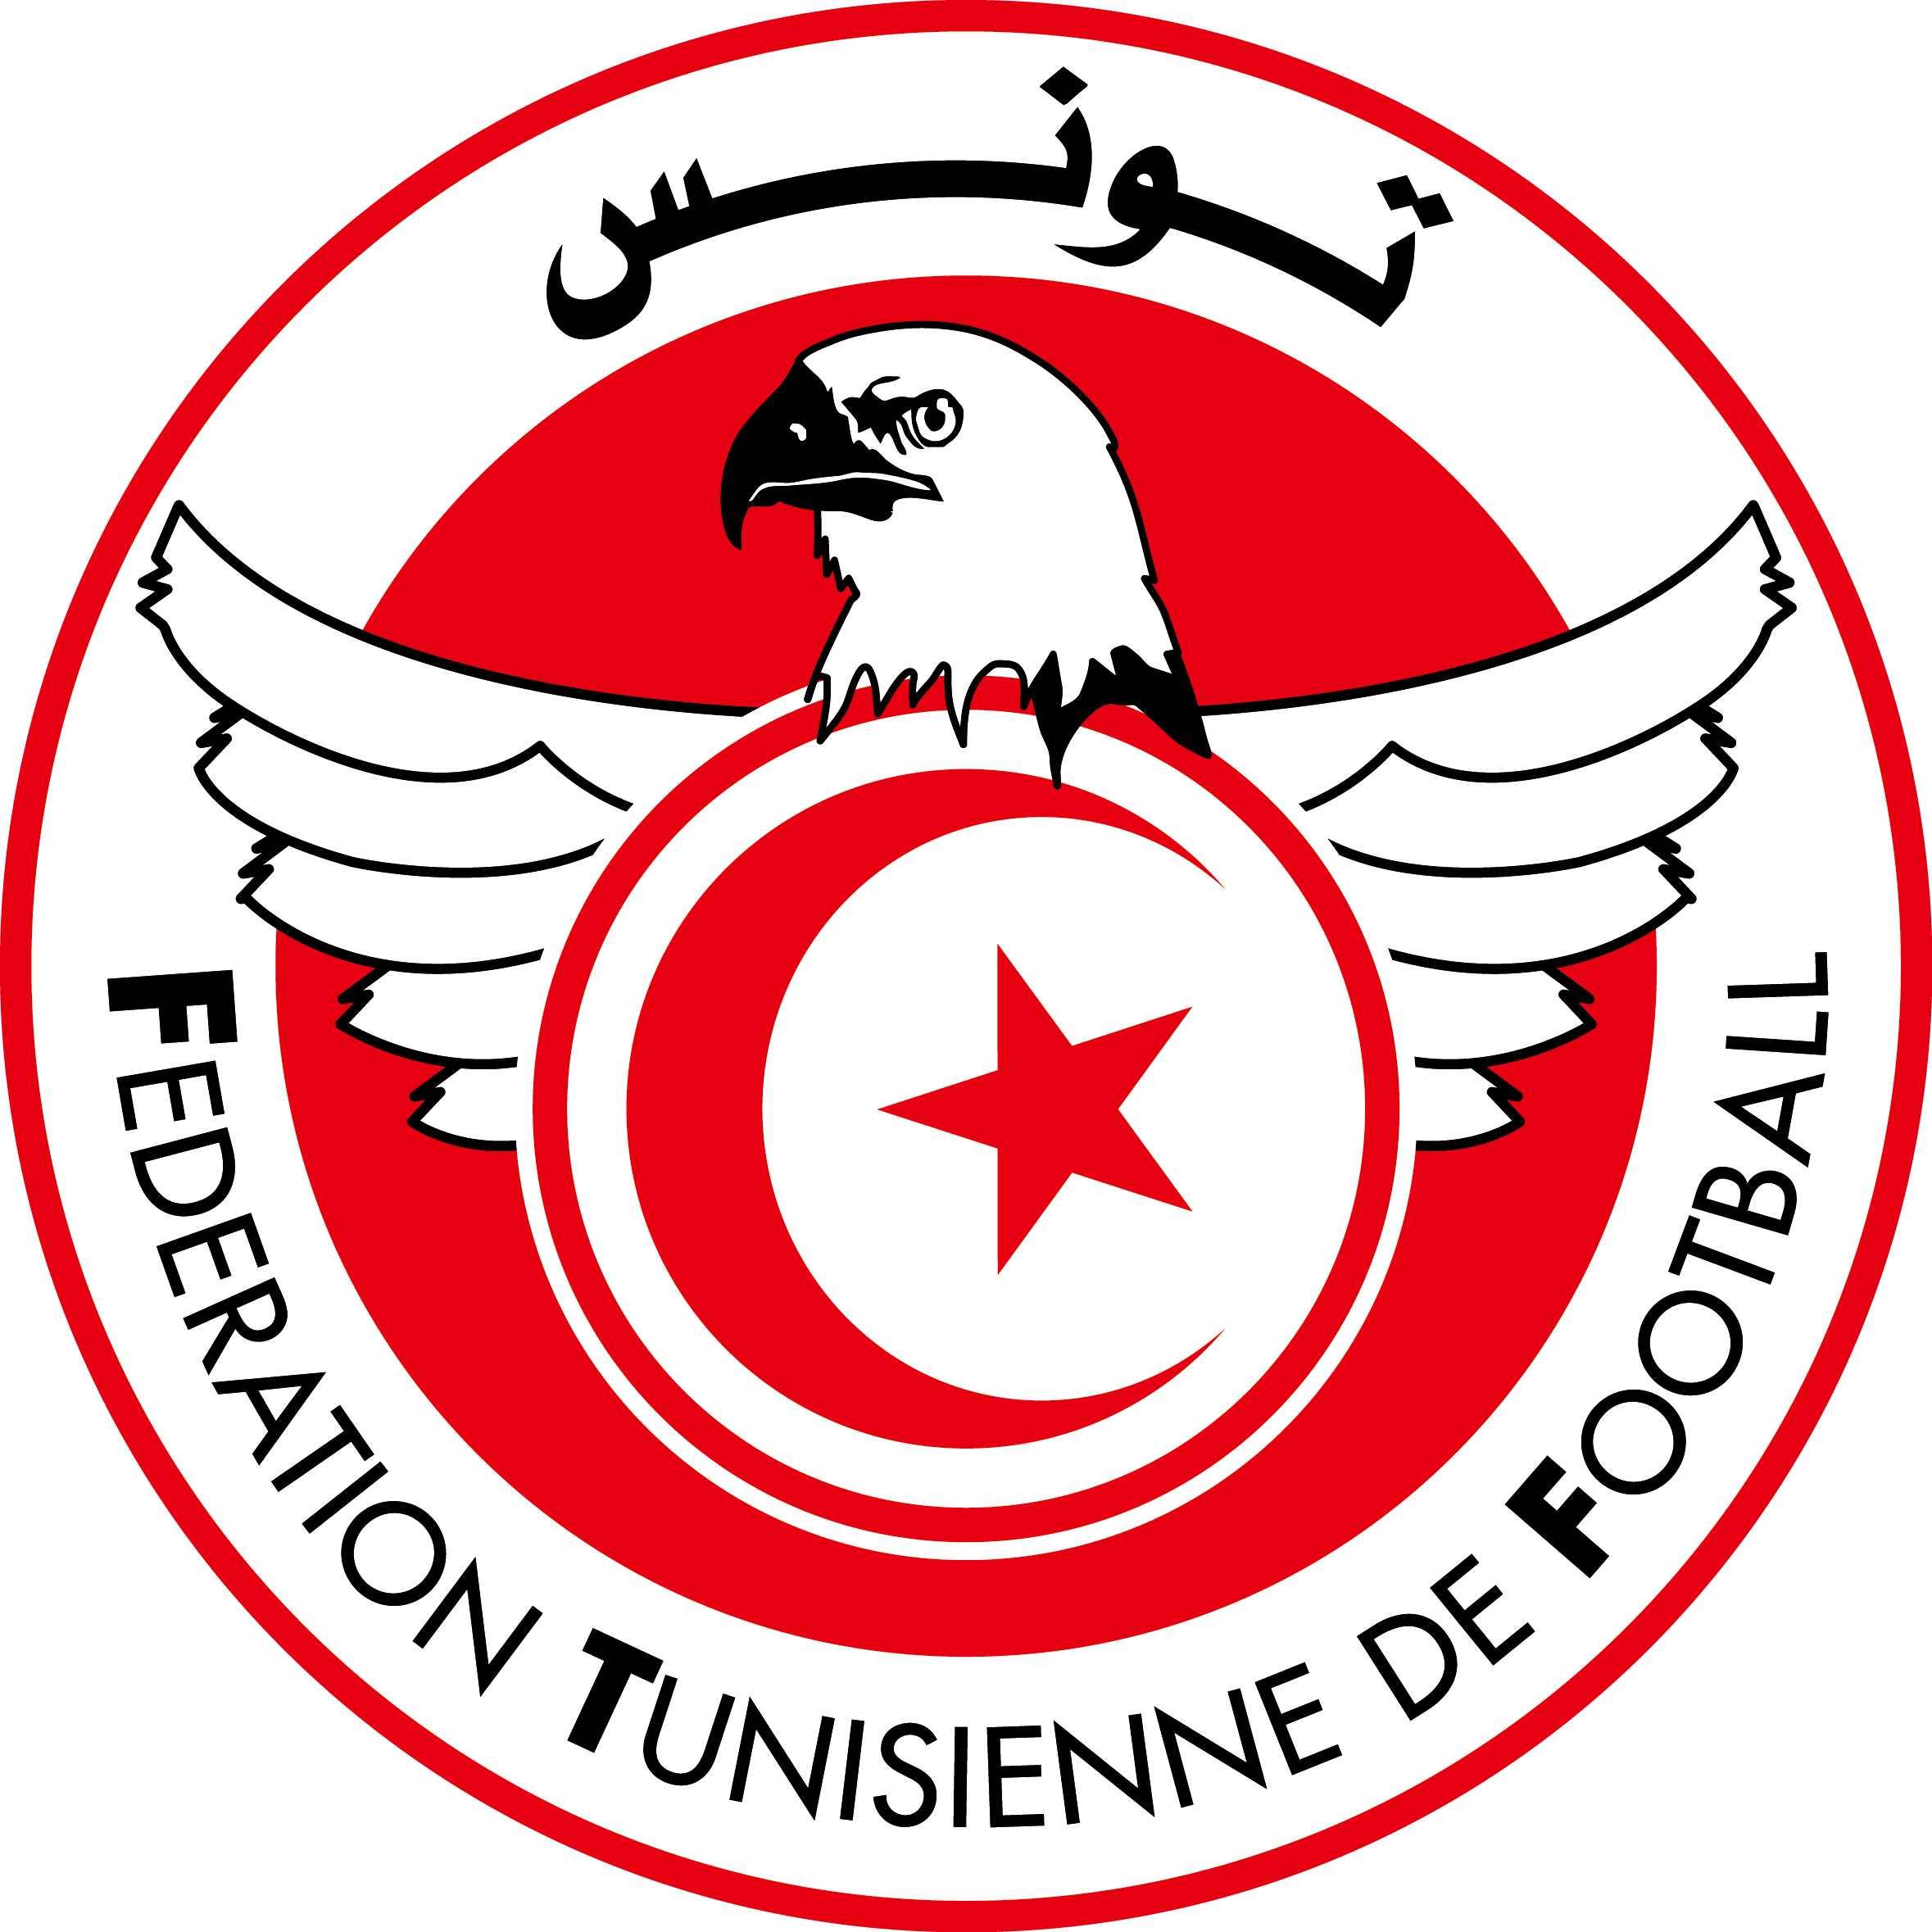 突尼斯国家男子足球队